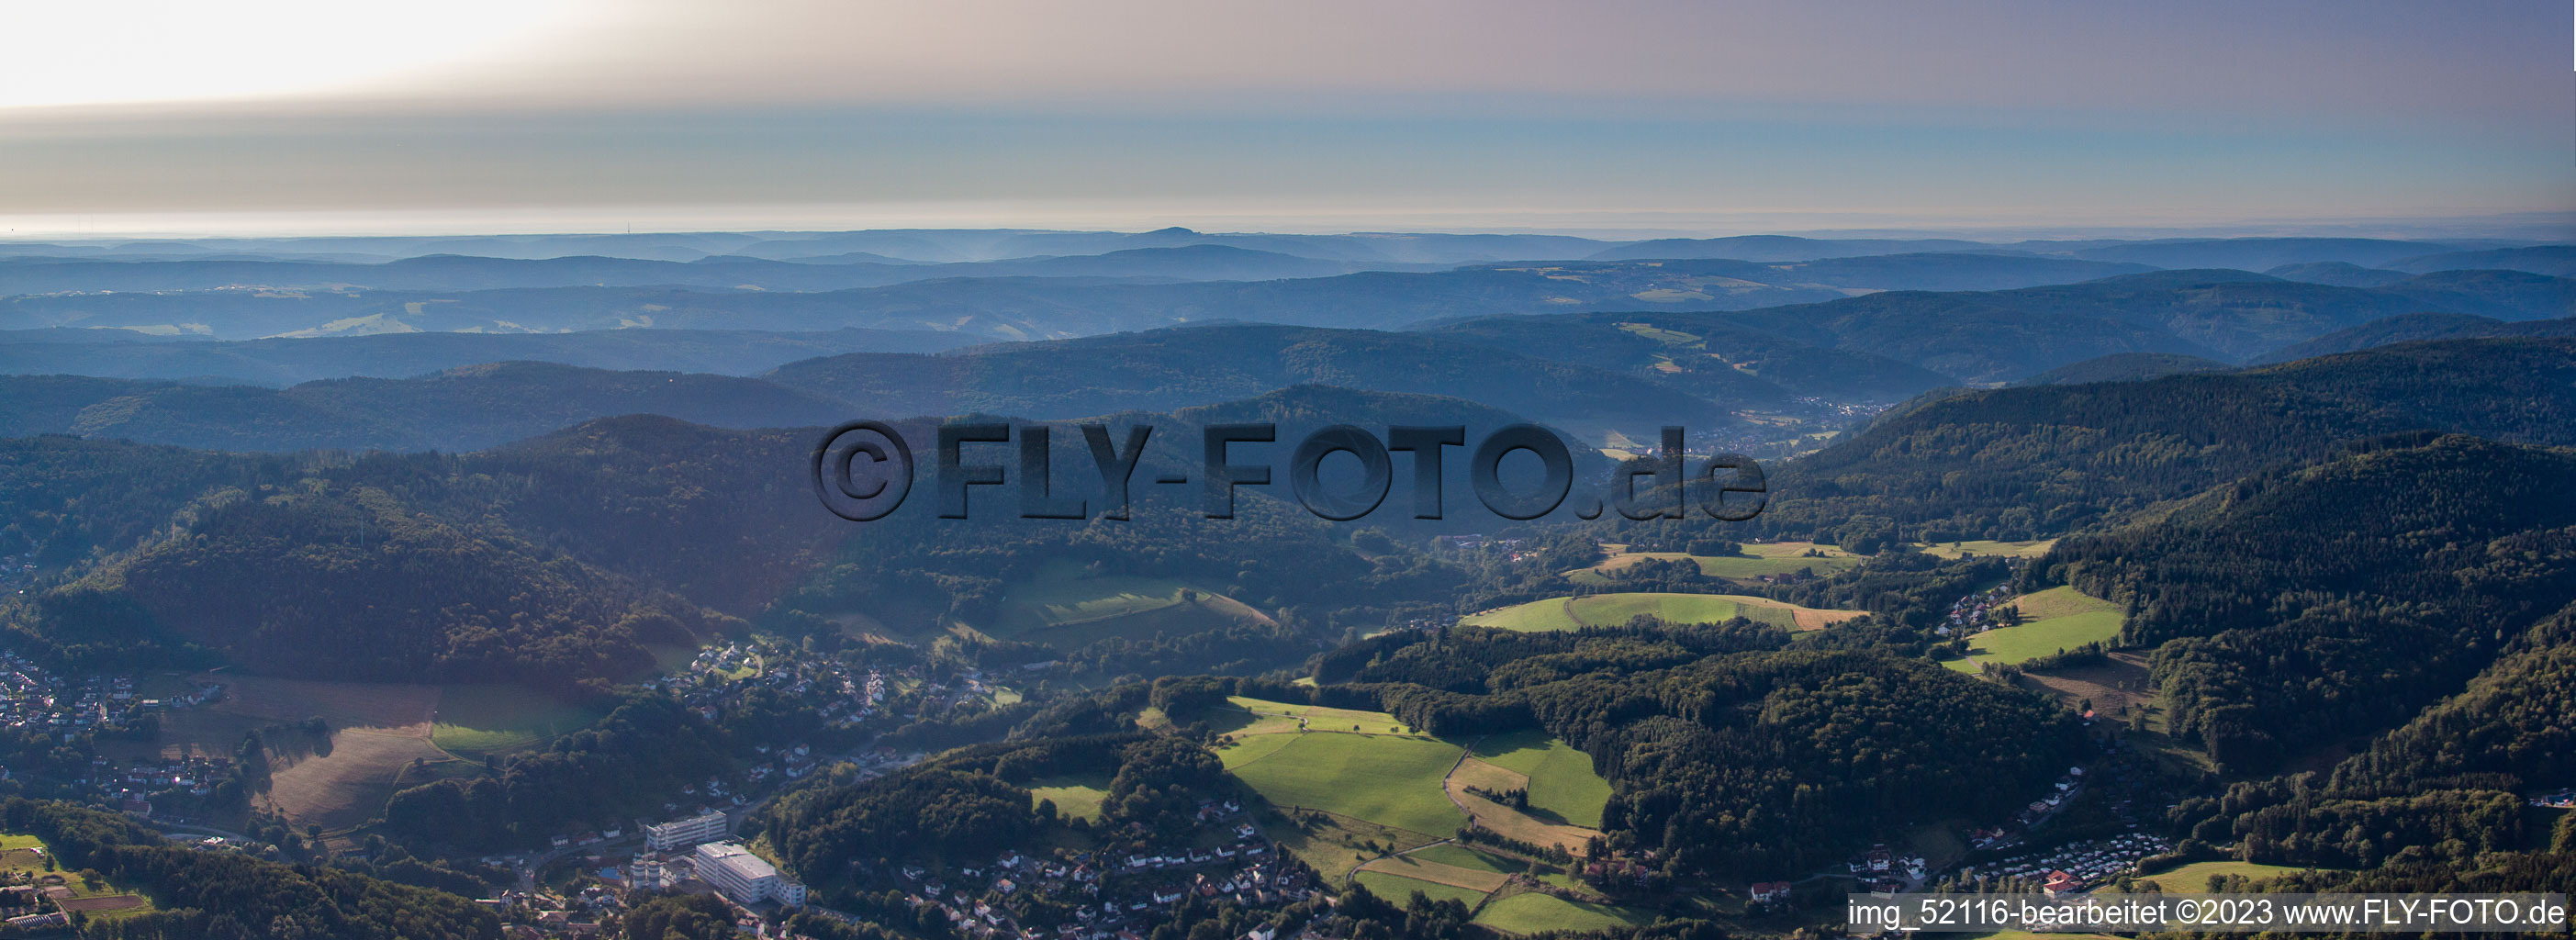 Wald-Michelbach im Bundesland Hessen, Deutschland aus der Luft